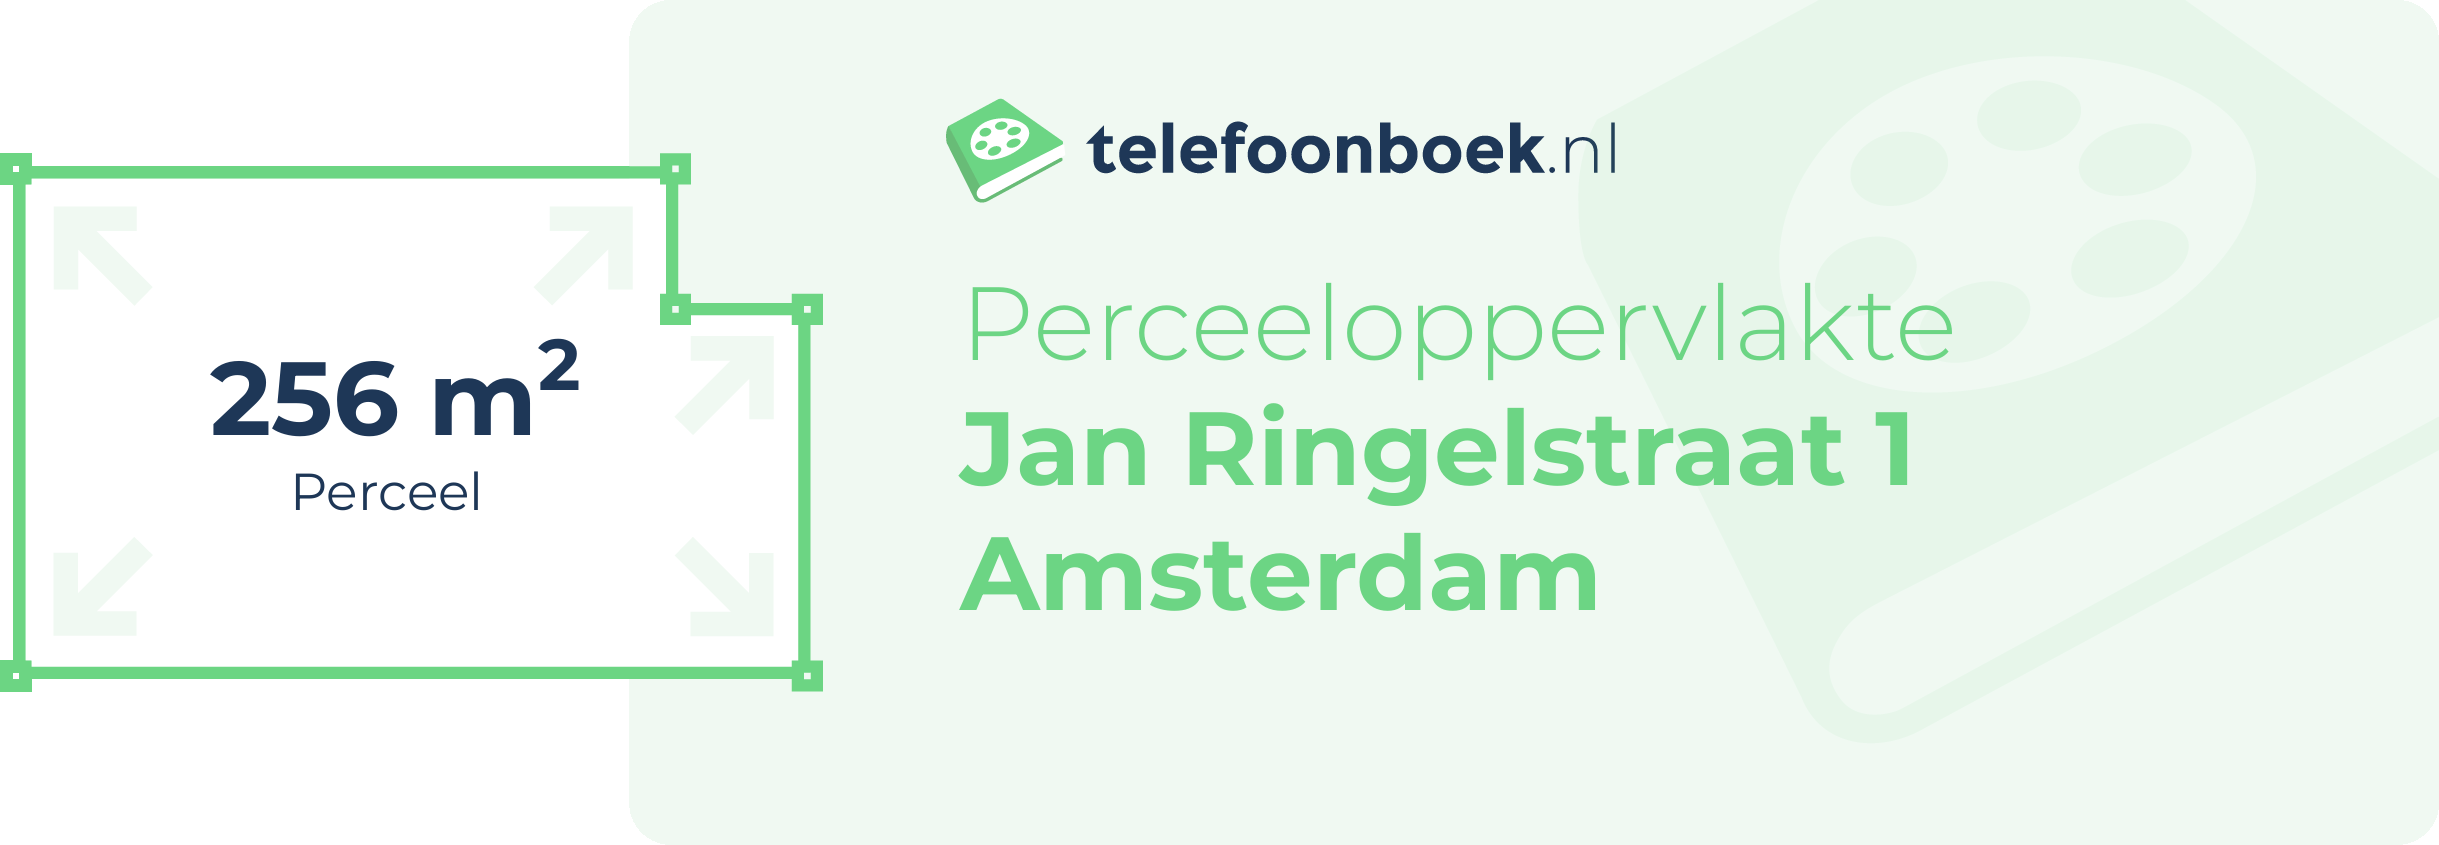 Perceeloppervlakte Jan Ringelstraat 1 Amsterdam